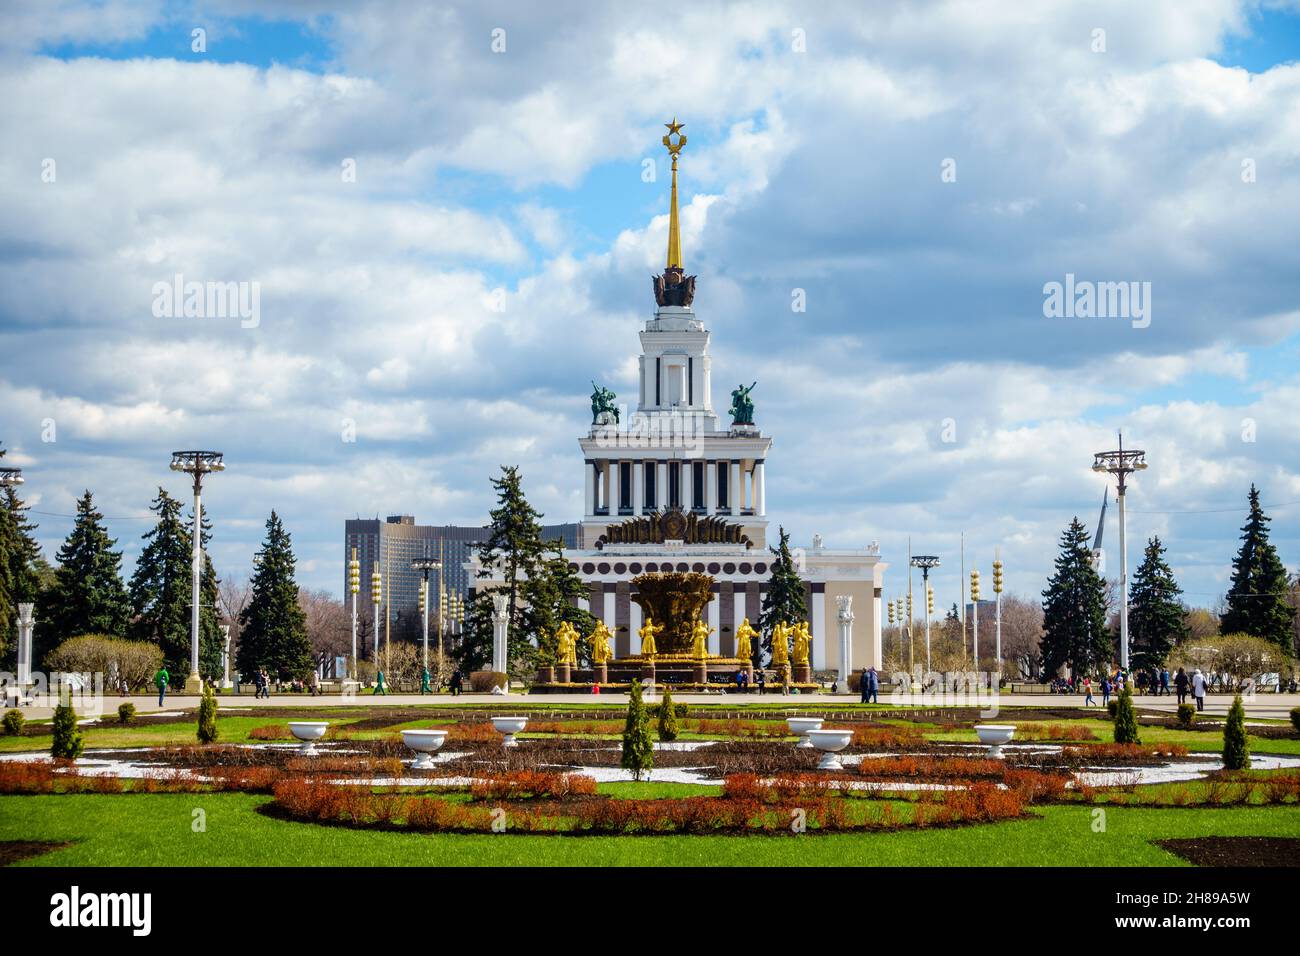 Mosca, Russia, 23 aprile 2016: Padiglione centrale e fontana dell'amicizia delle Nazioni alla Mostra dei risultati dell'economia nazionale a Mosca Foto Stock